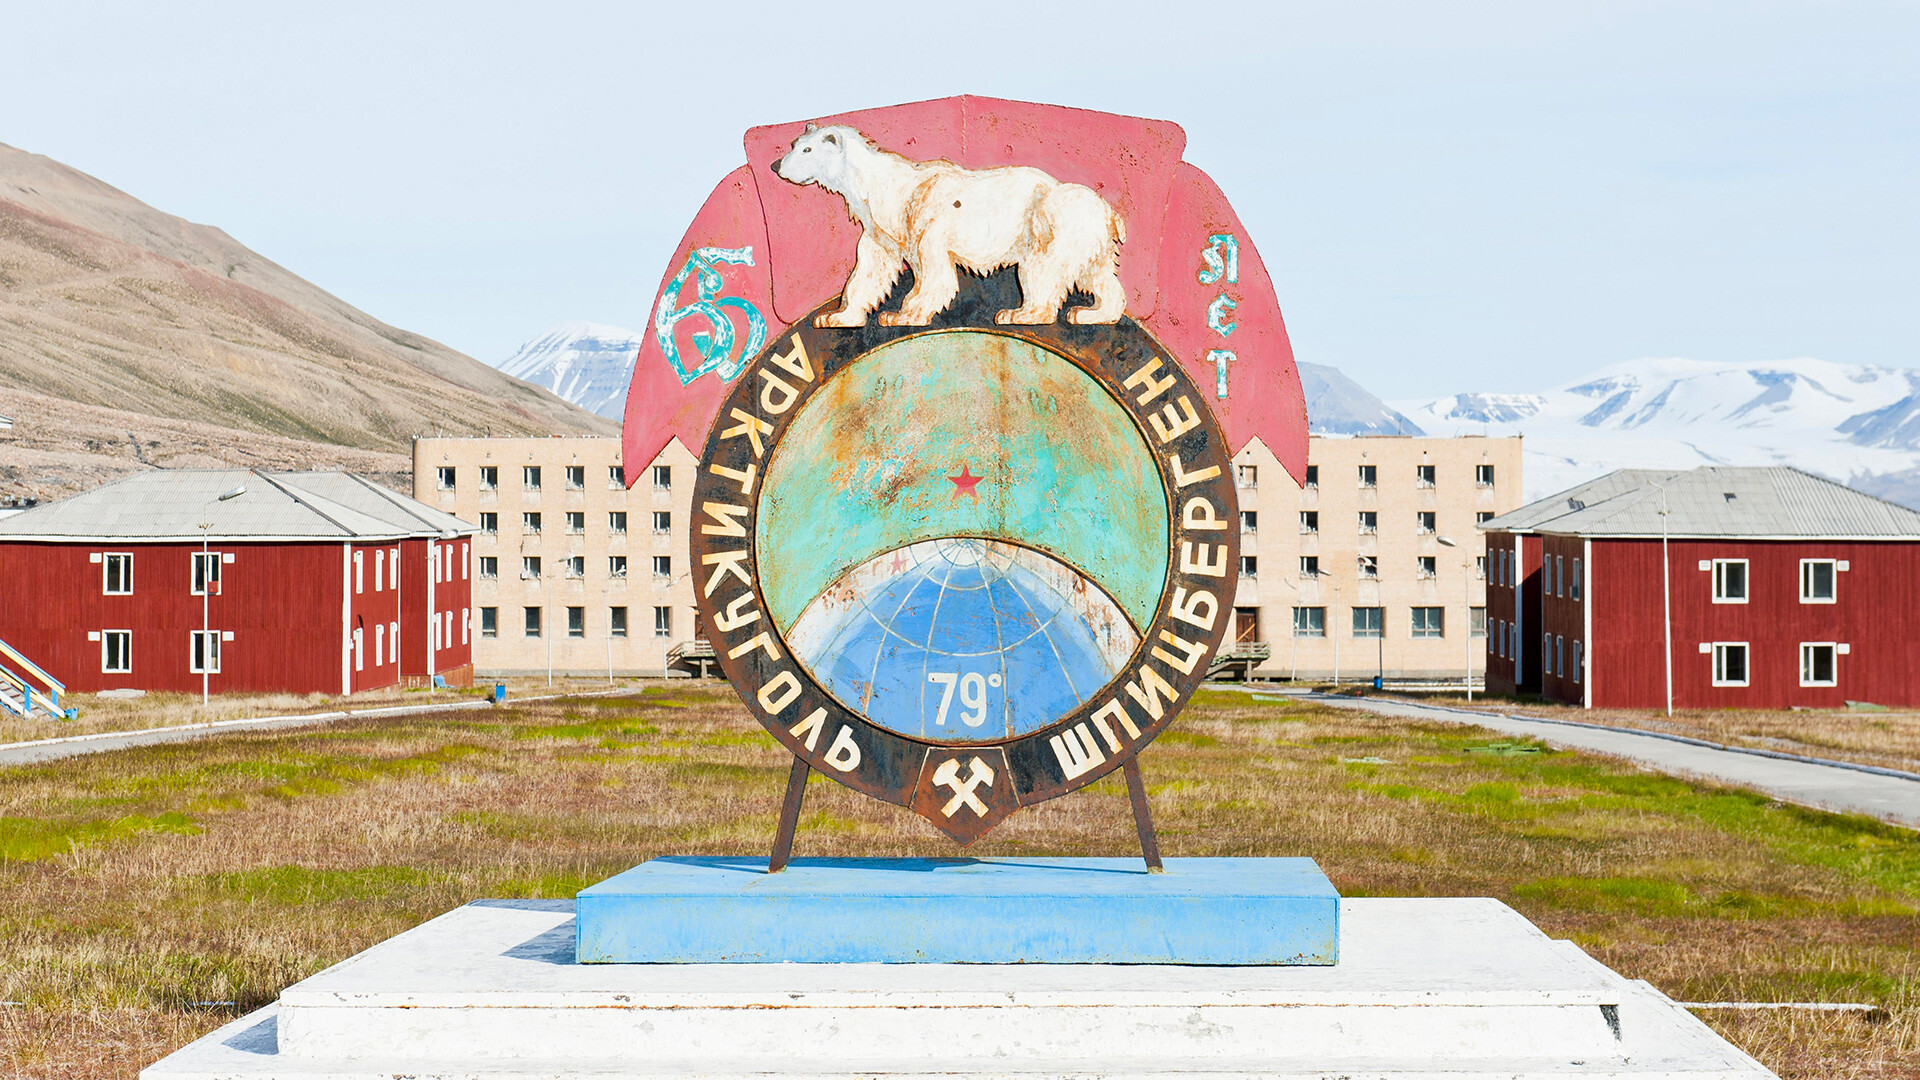 Pueblo fantasma, monumento con oso polar, escudo ruso de la empresa Arktikugol, asentamiento minero ruso abandonado Pyramiden, Spitsbergen, Svalbard, Noruega.